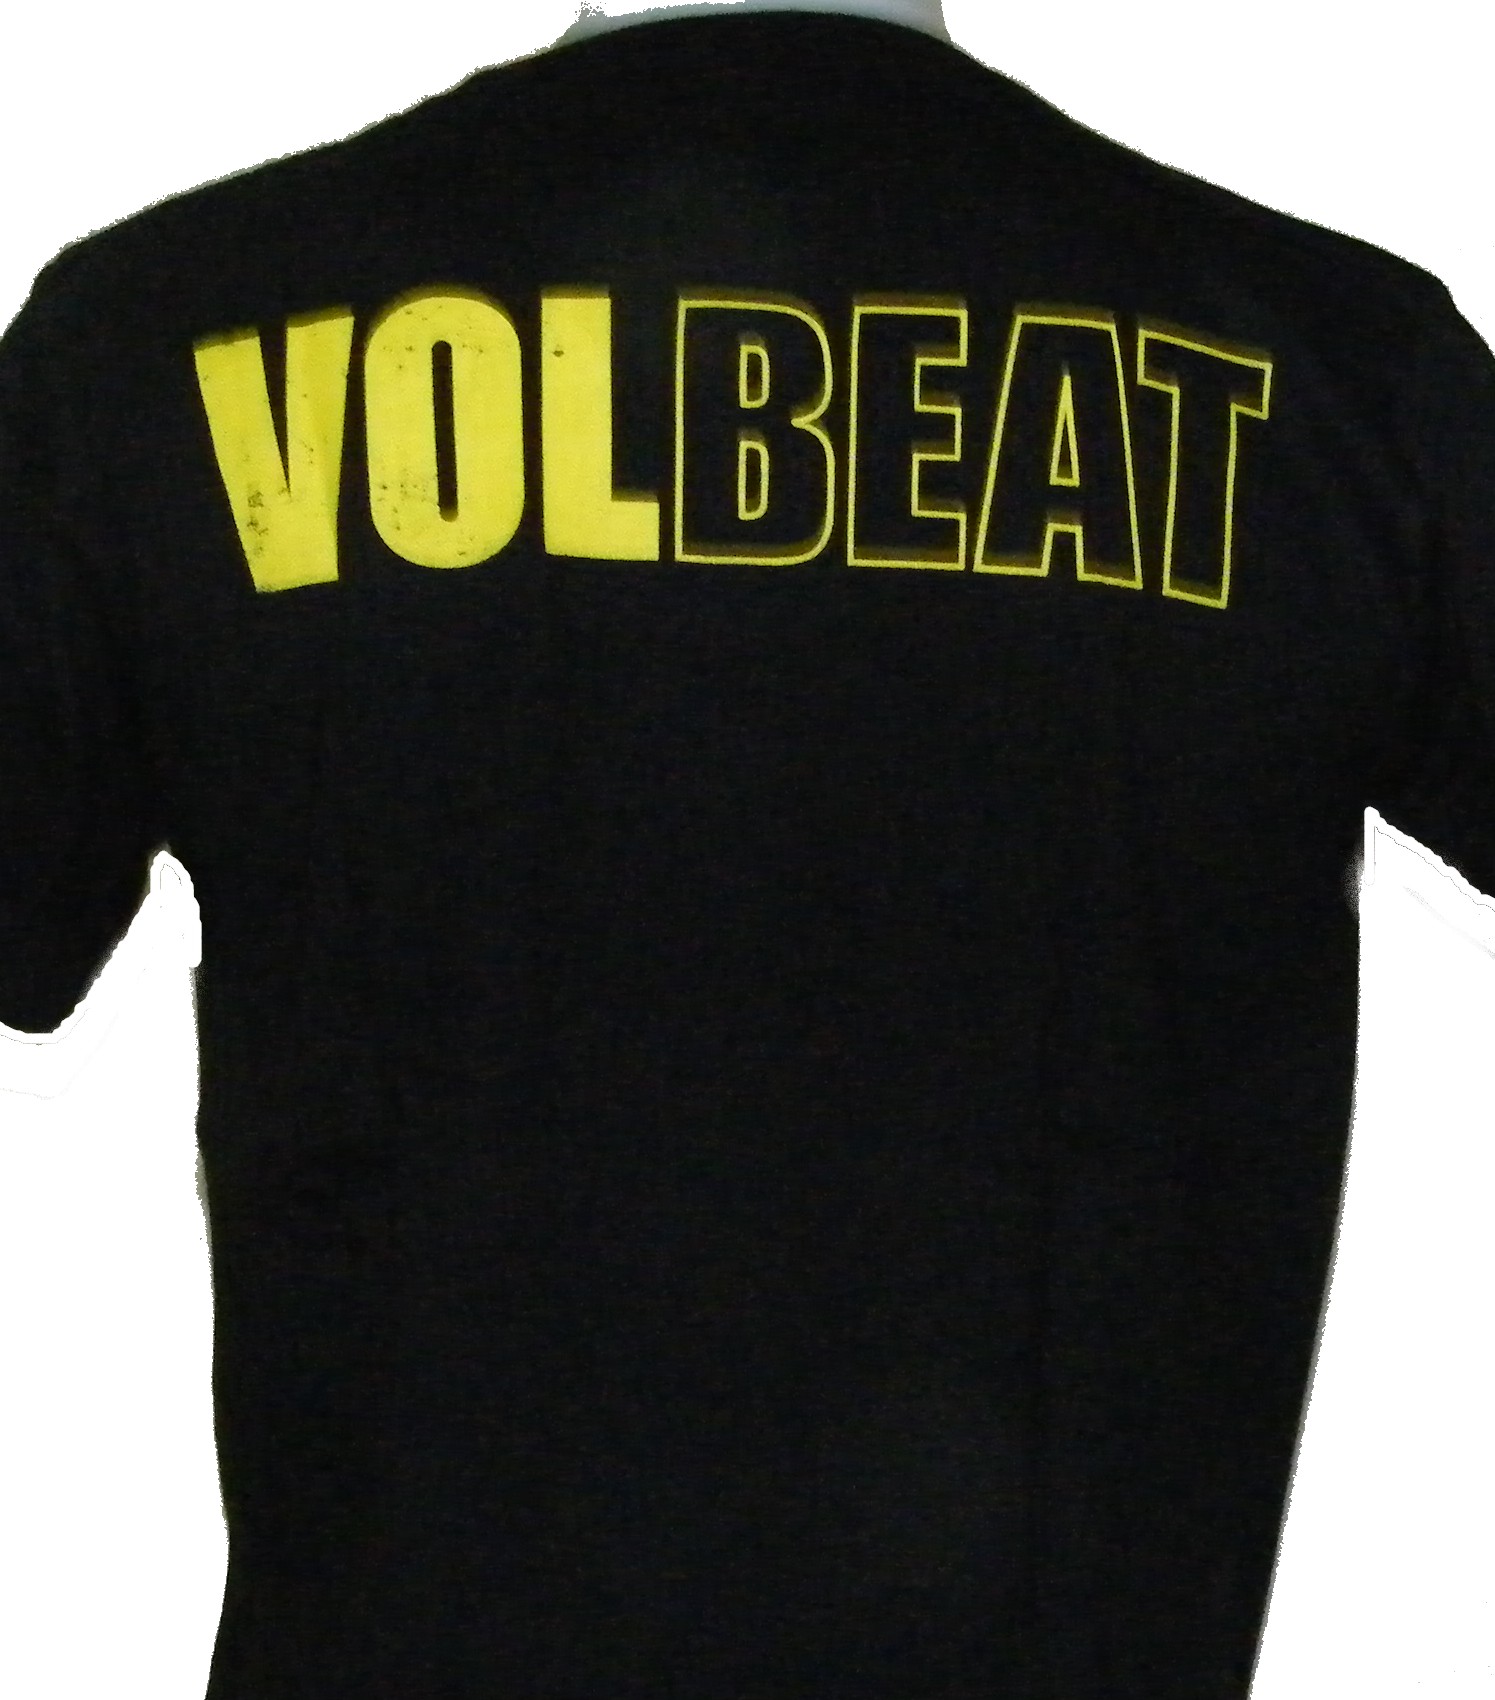 Volbeat t-shirt size RoxxBKK